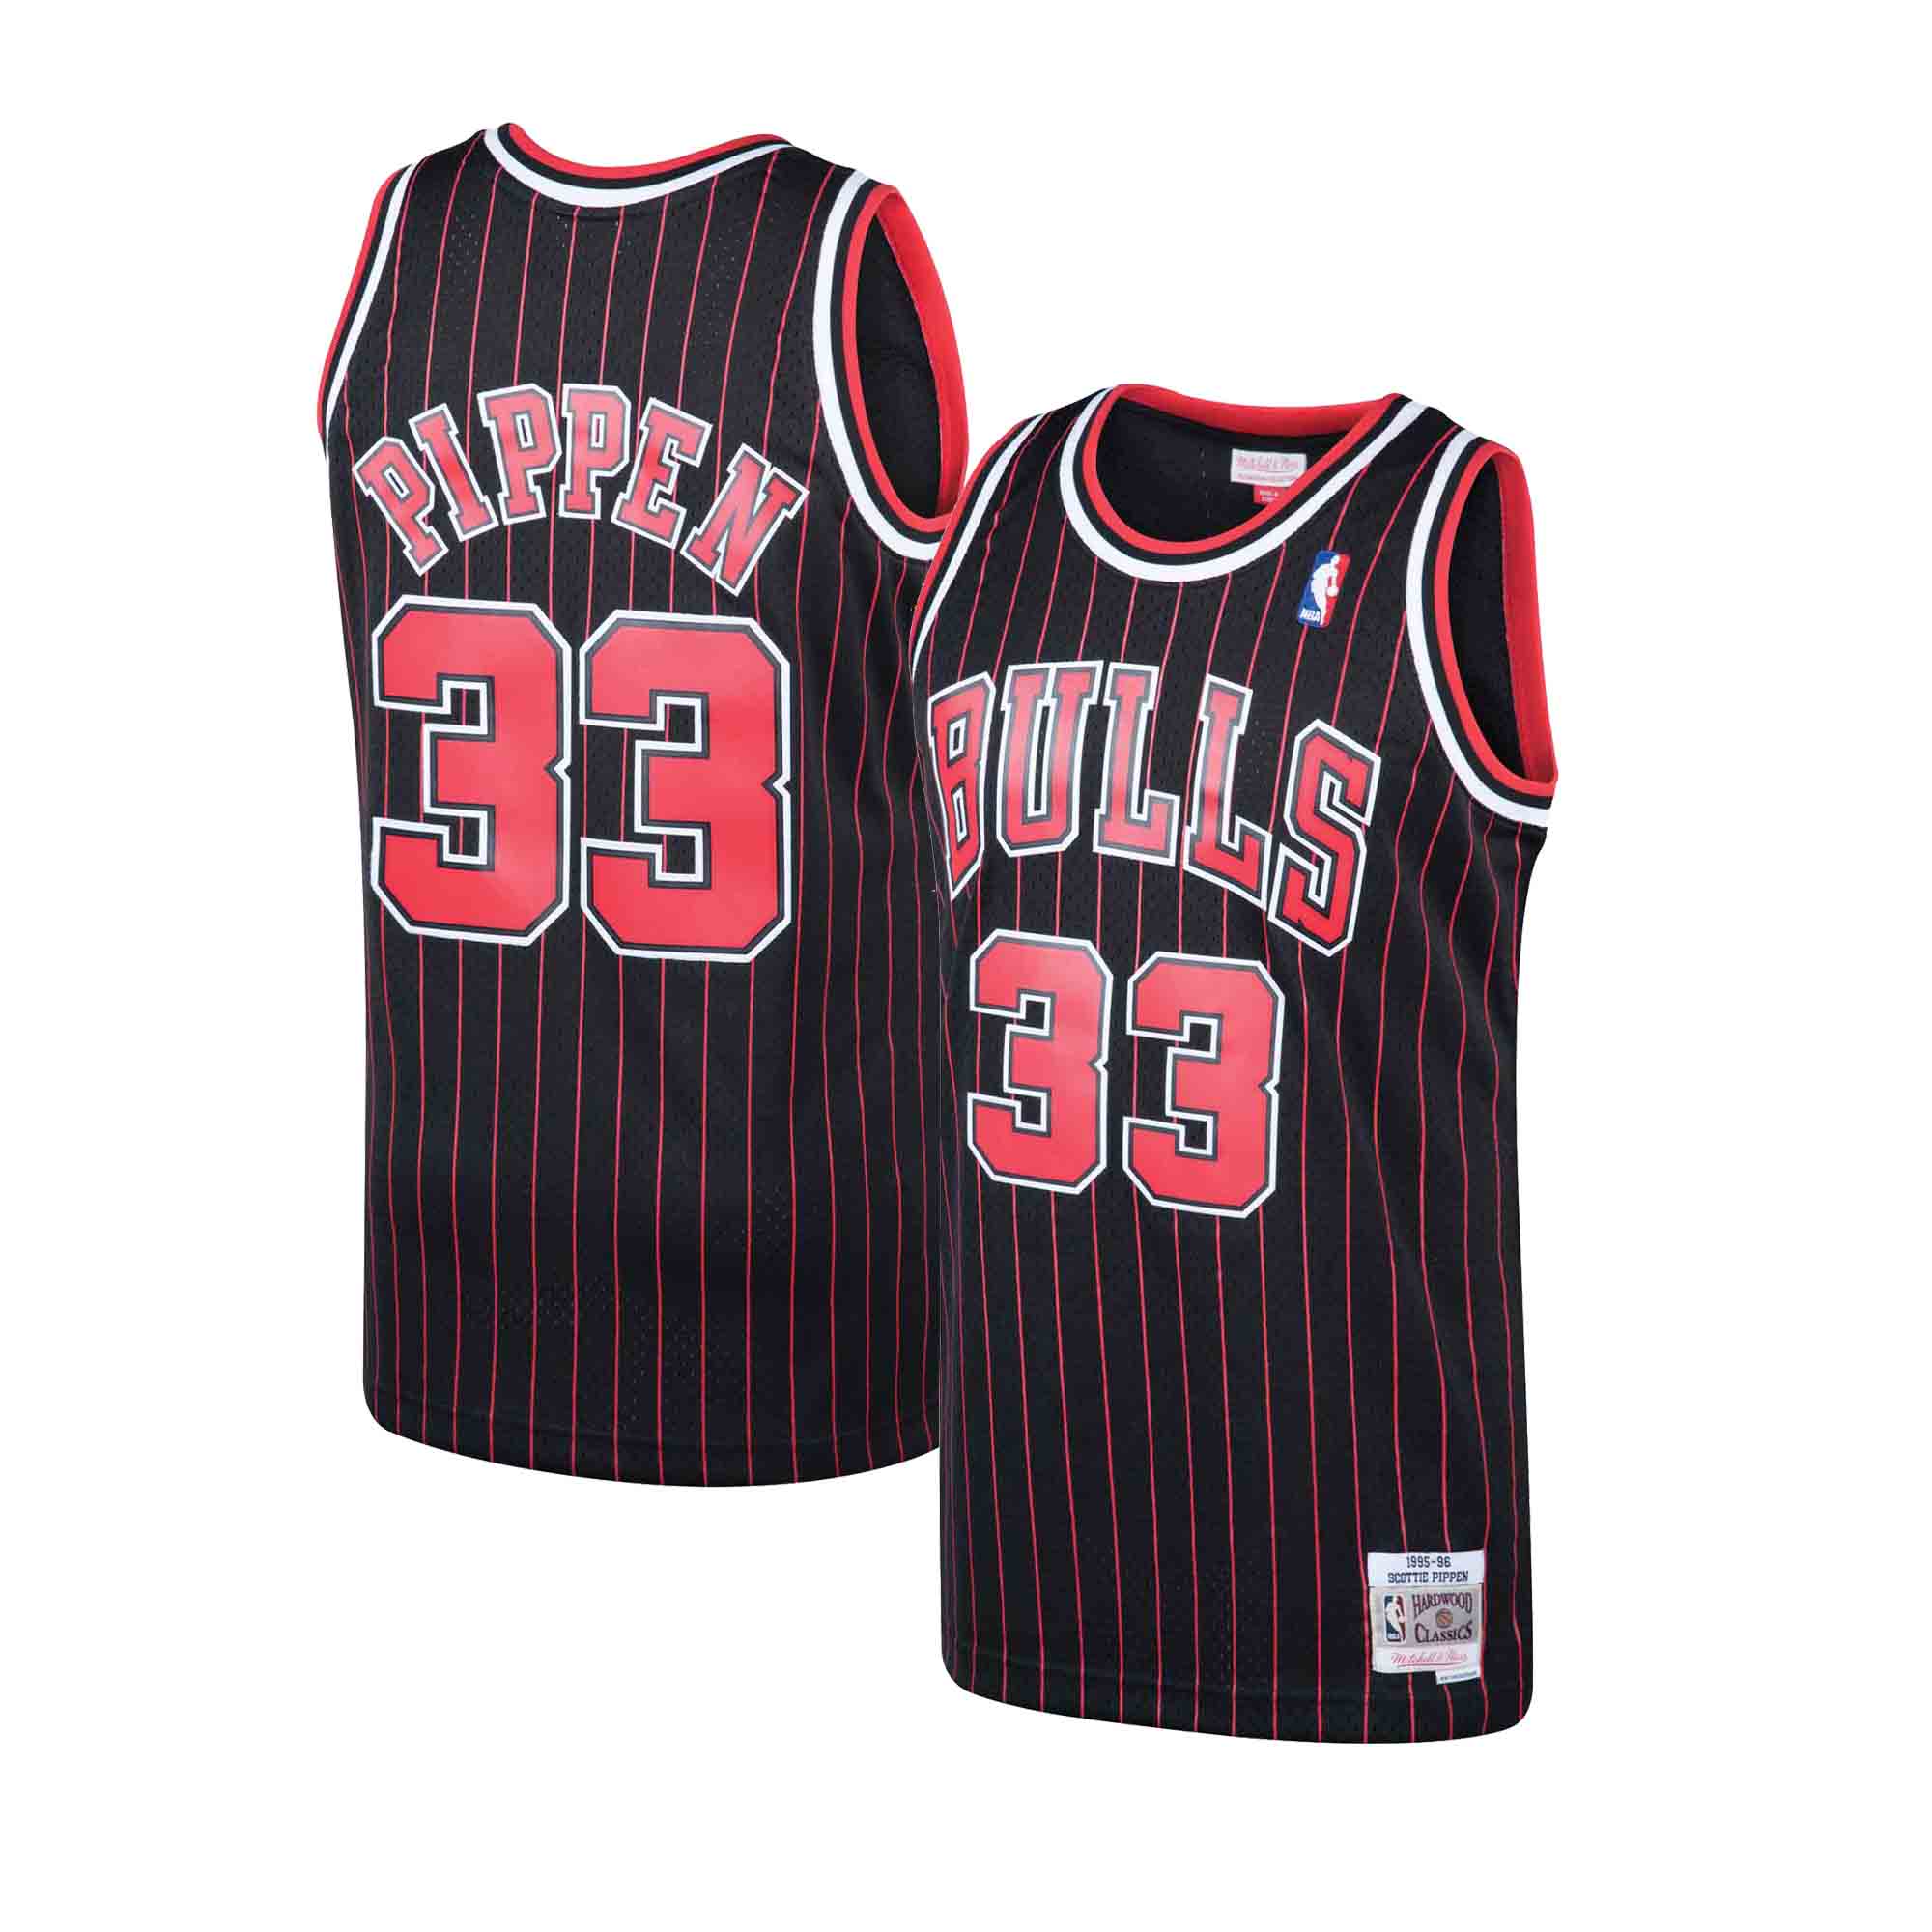 Scottie Pippen Chicago Bulls 33 Jersey – Nonstop Jersey